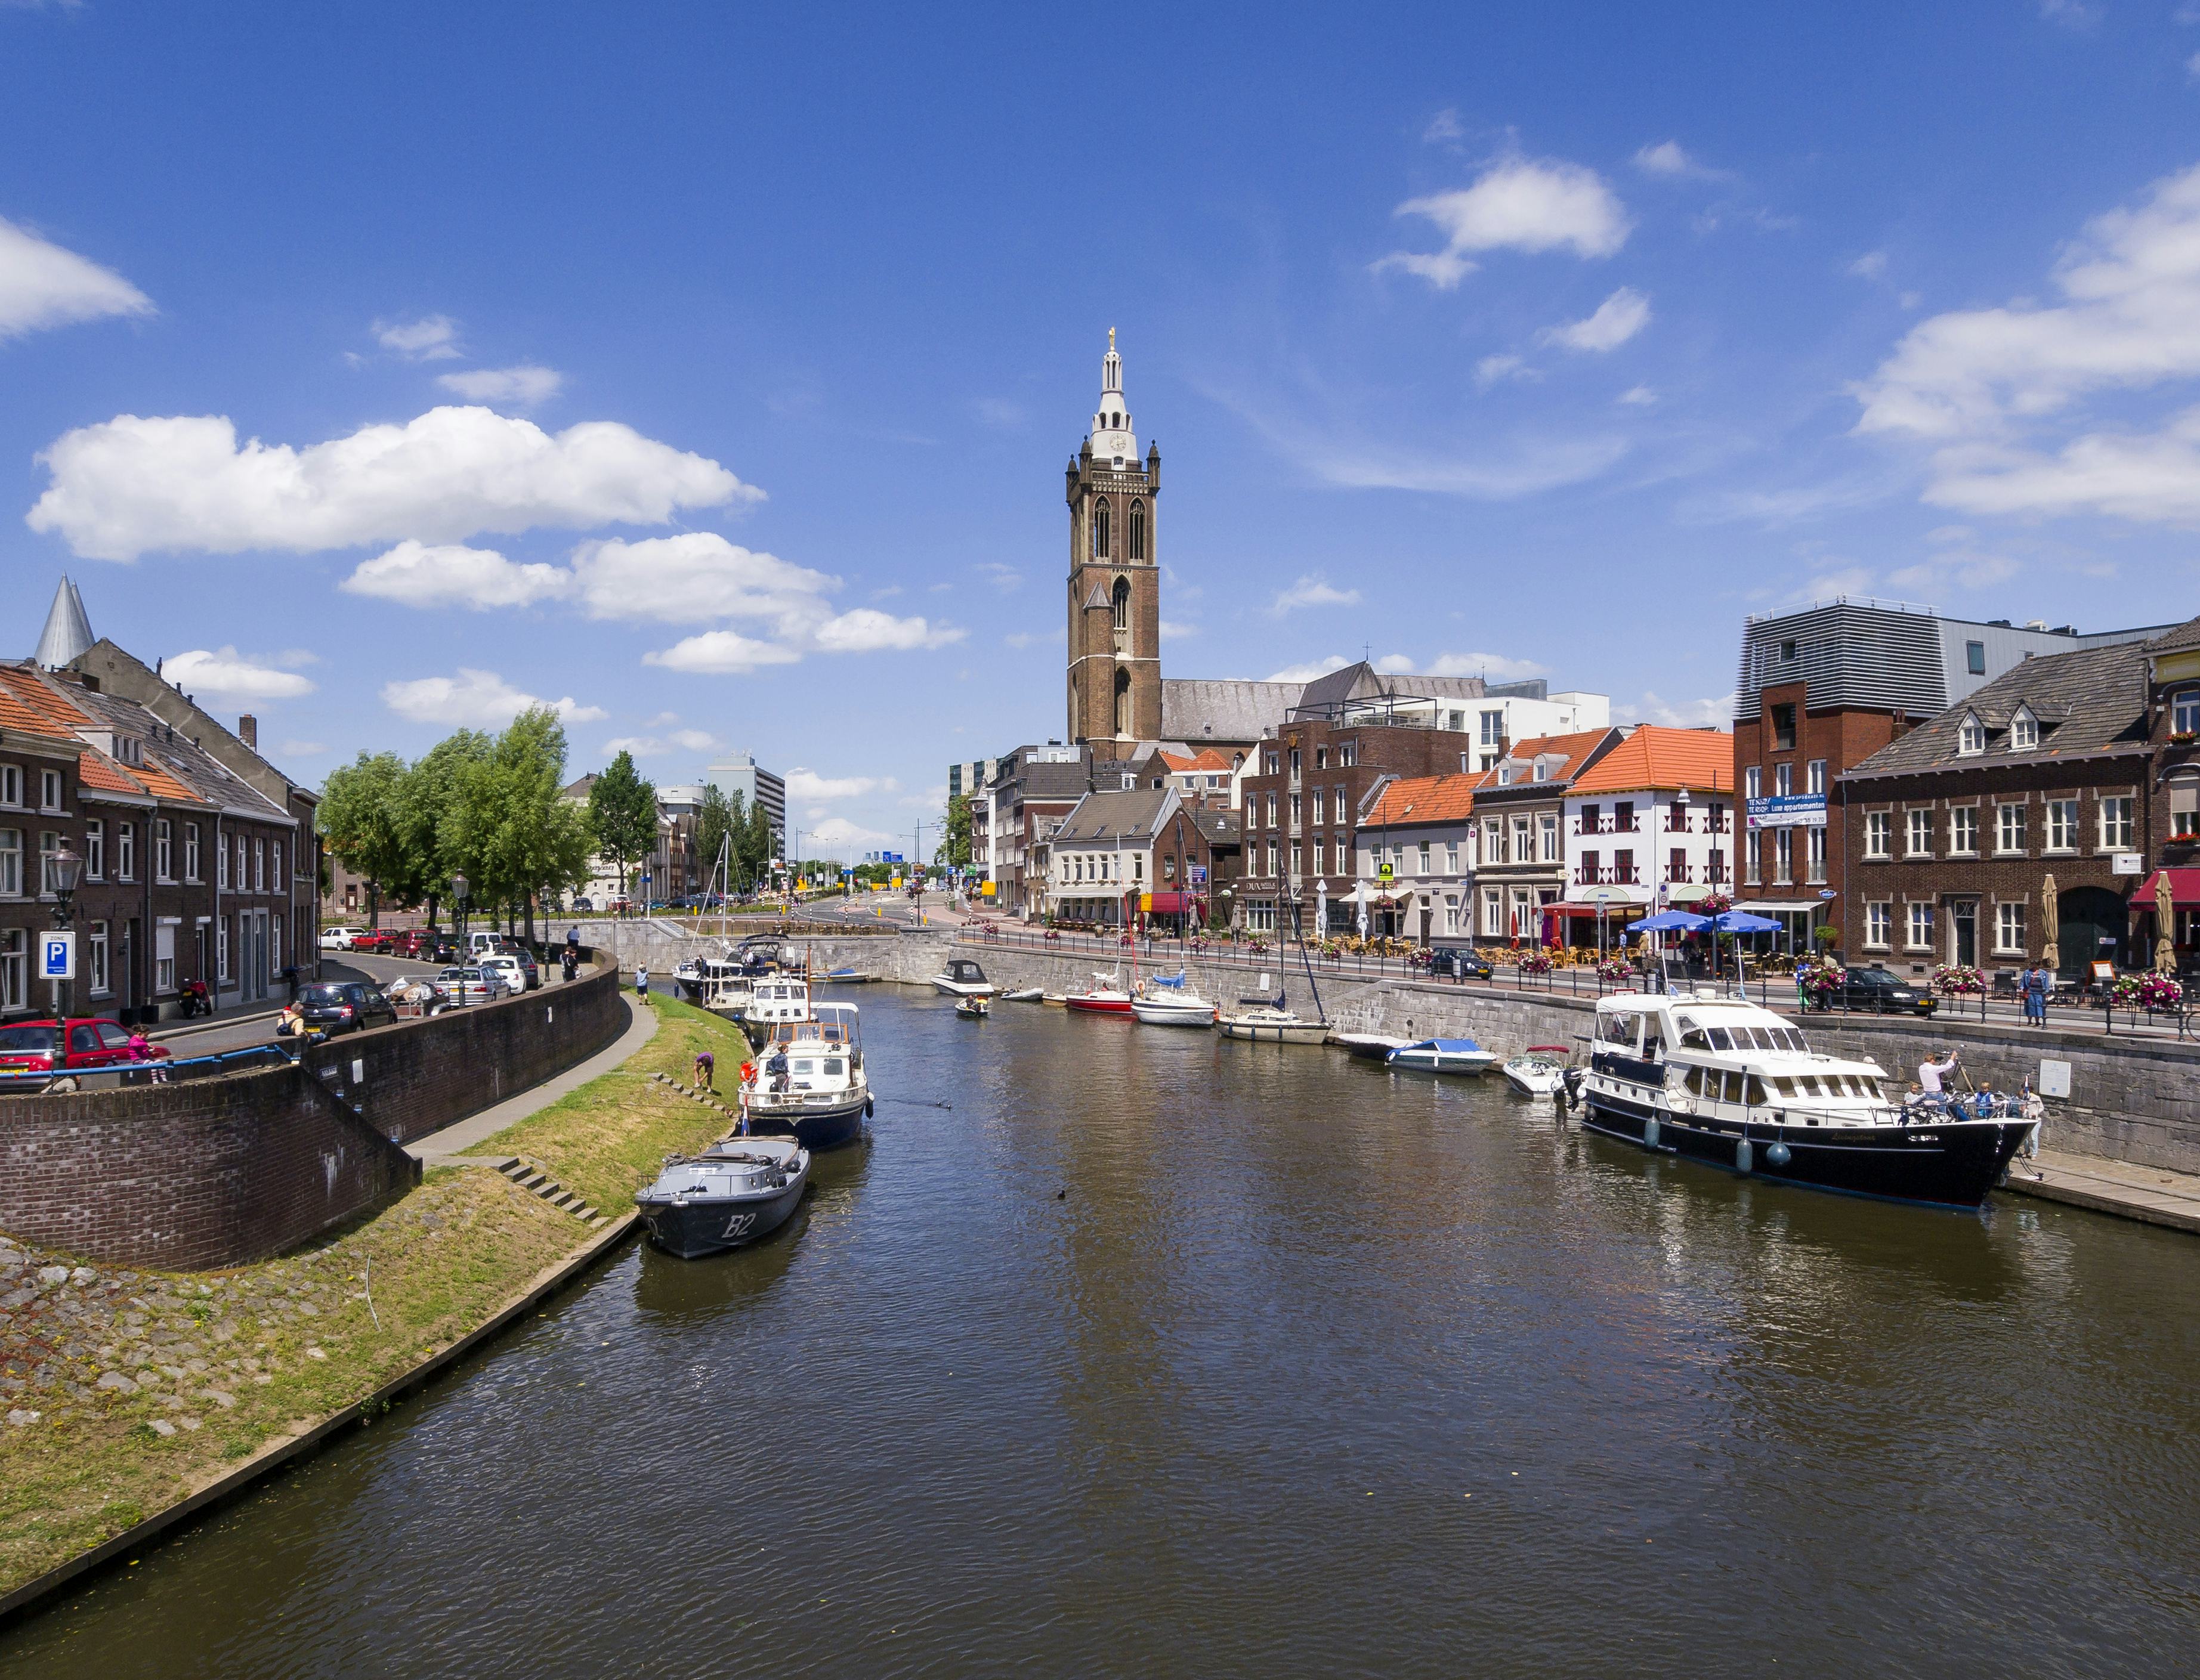 Trivago Nederland: Amsterdam niet in top 10 hotelsteden